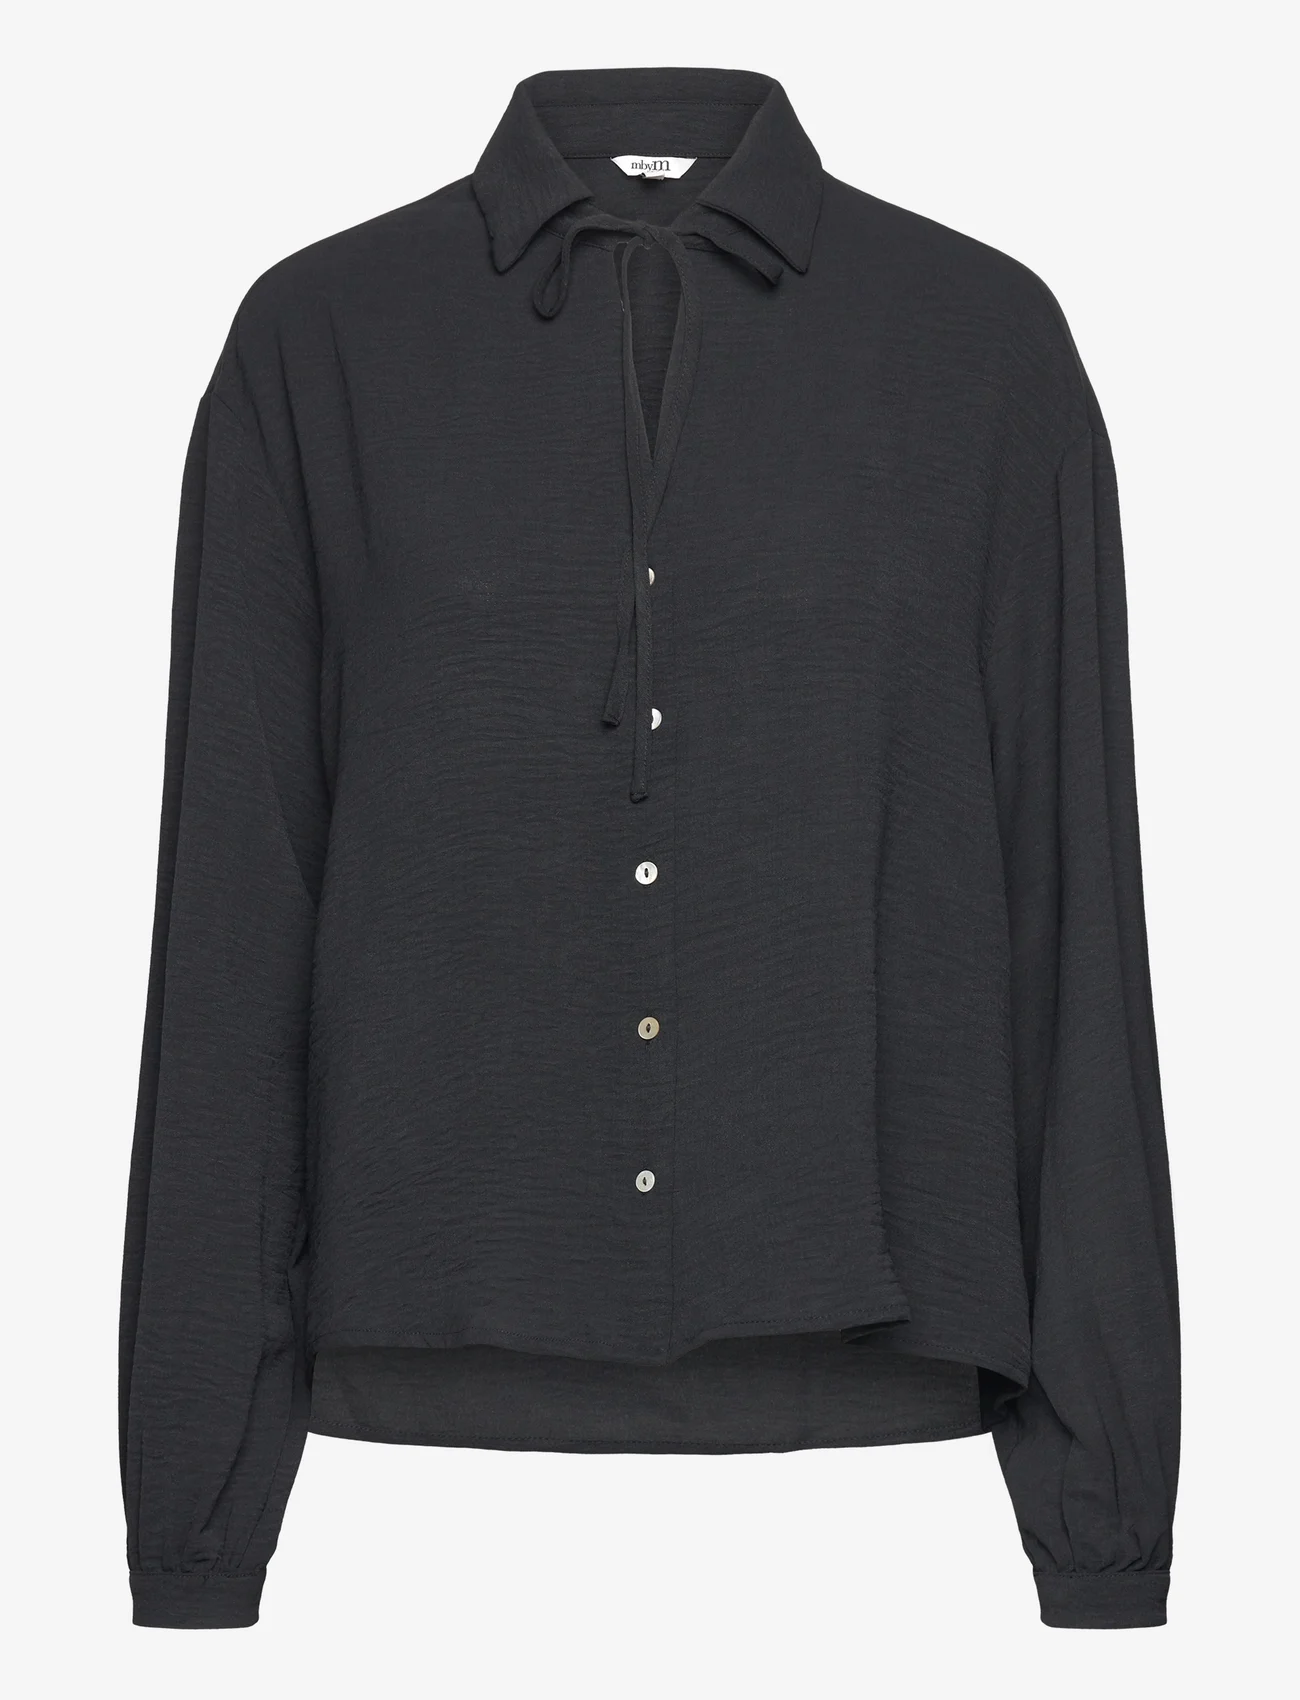 mbyM - Patina-M - marškiniai ilgomis rankovėmis - black - 0